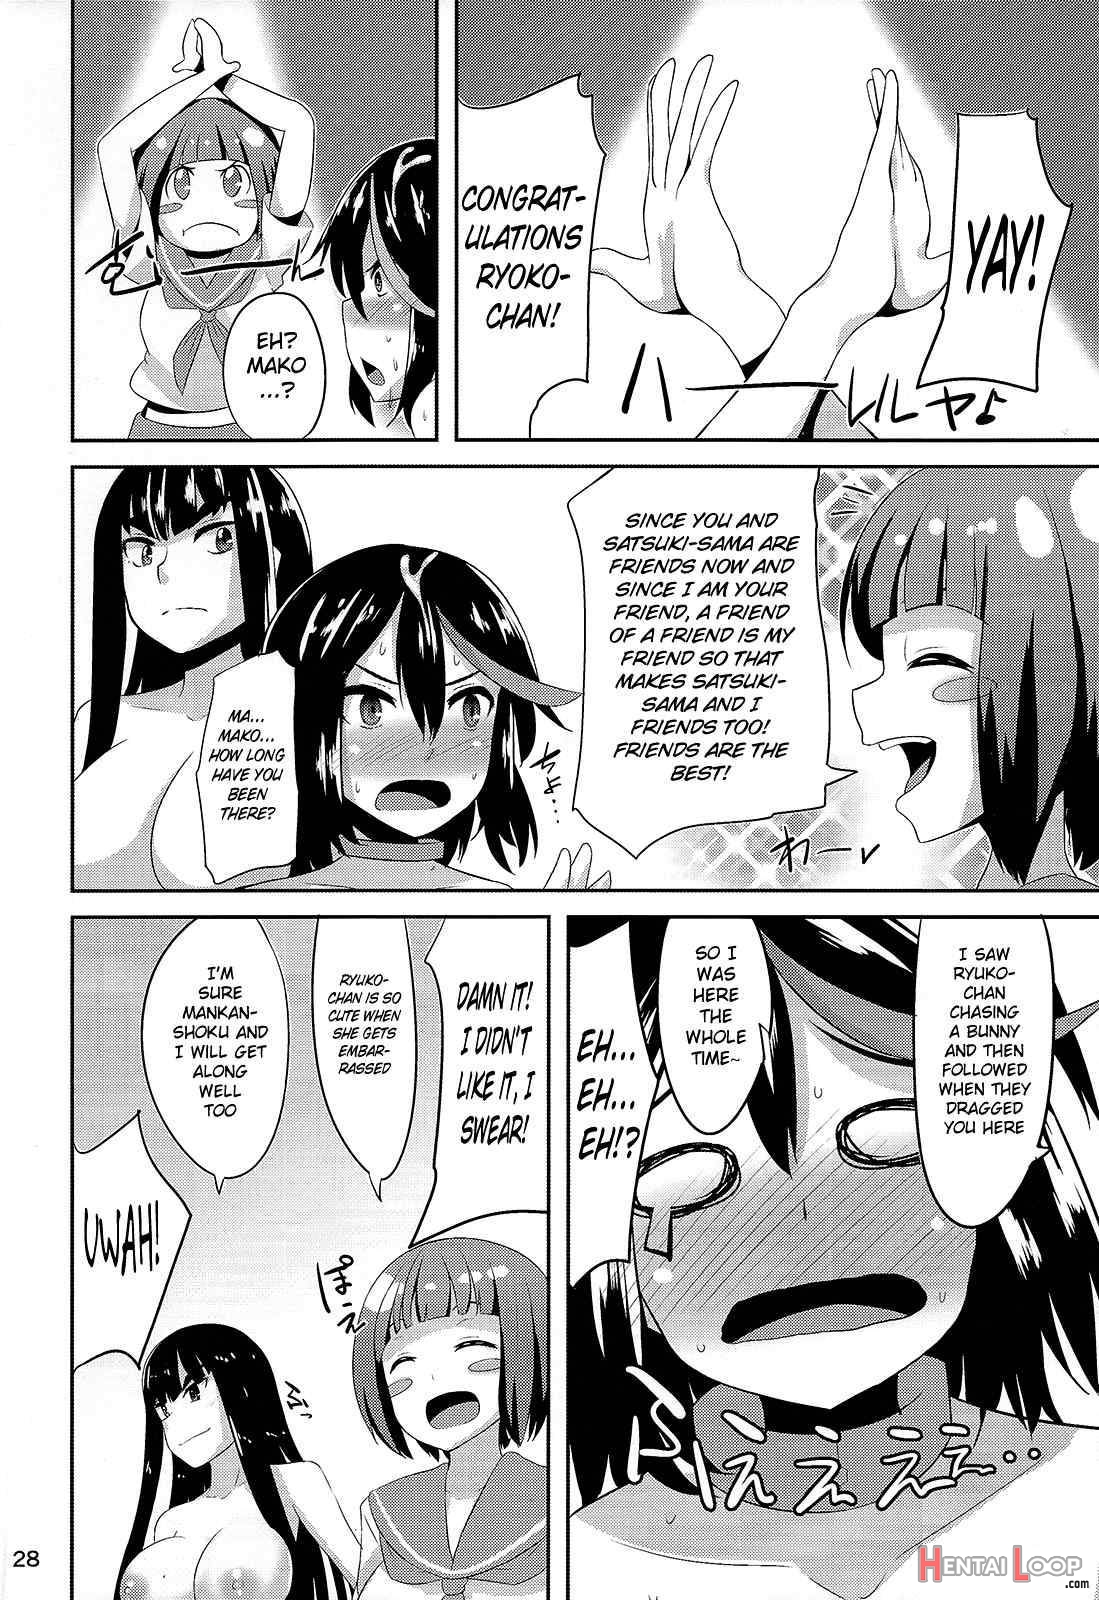 Satsuki-Ryu page 25